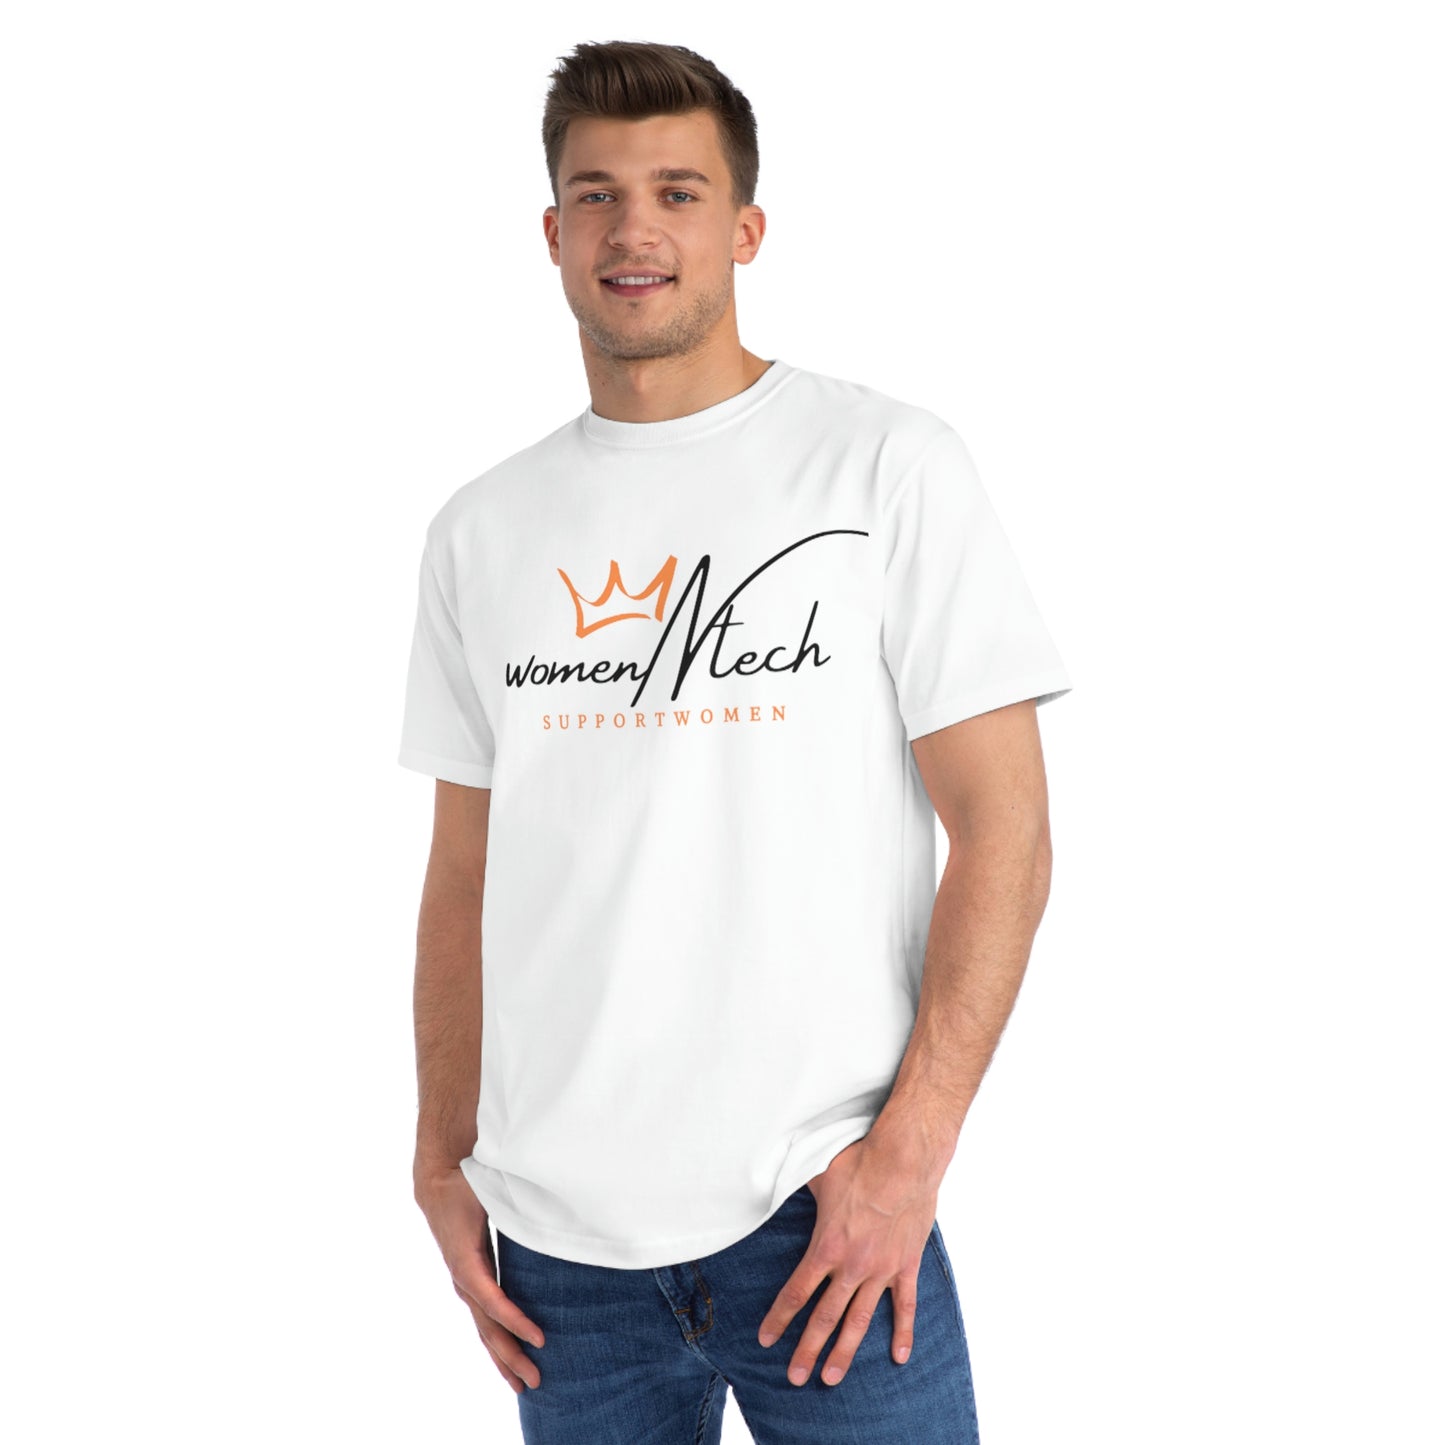 Shop Now Organic Unisex Classic T-Shirt | WomenNtech